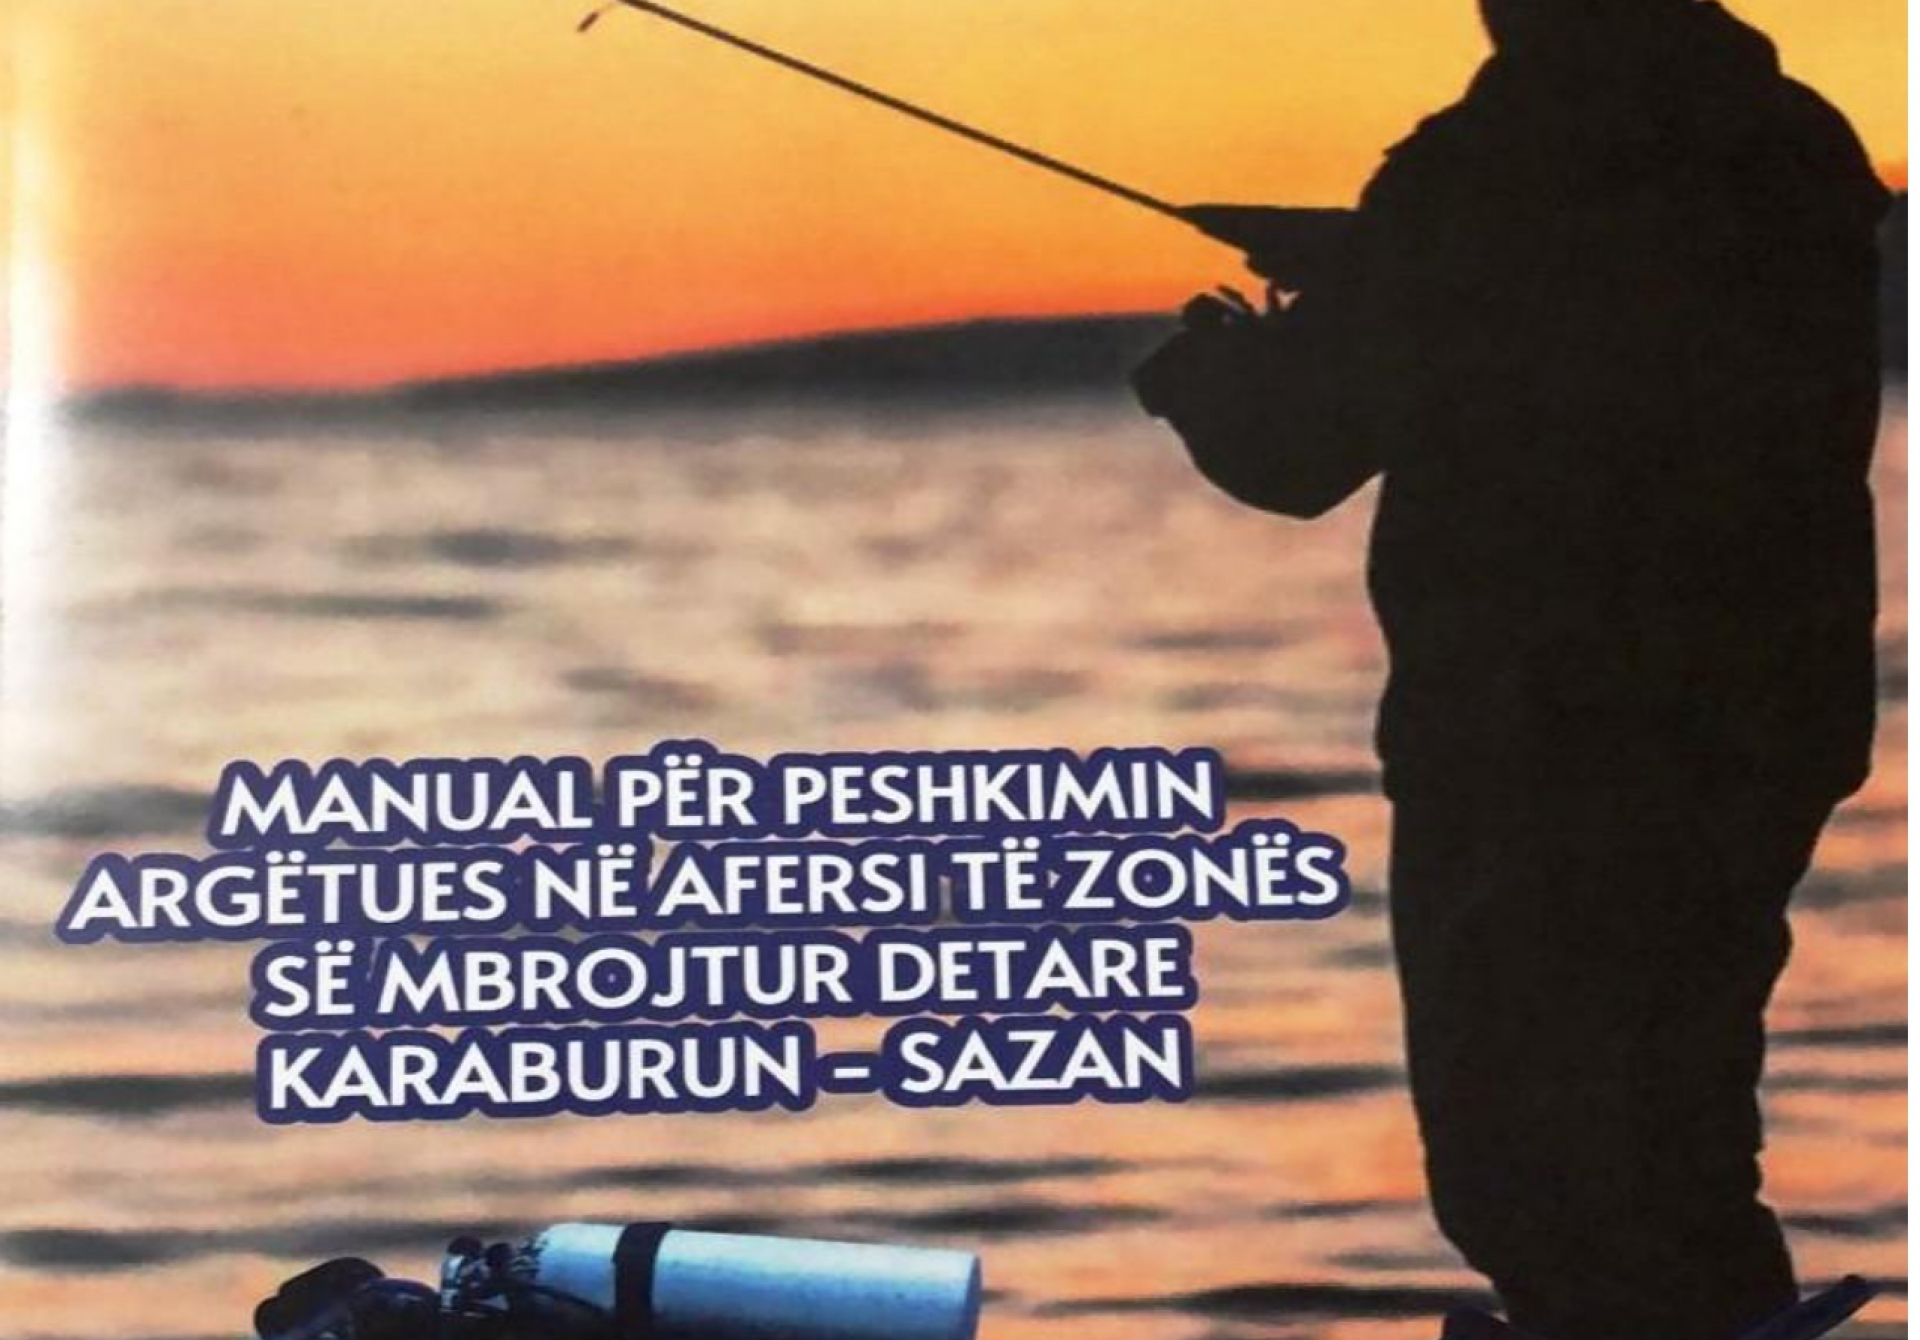 Al_Manual për peshkimin argëtues në afërsi të ZMD Karaburun-Sazan